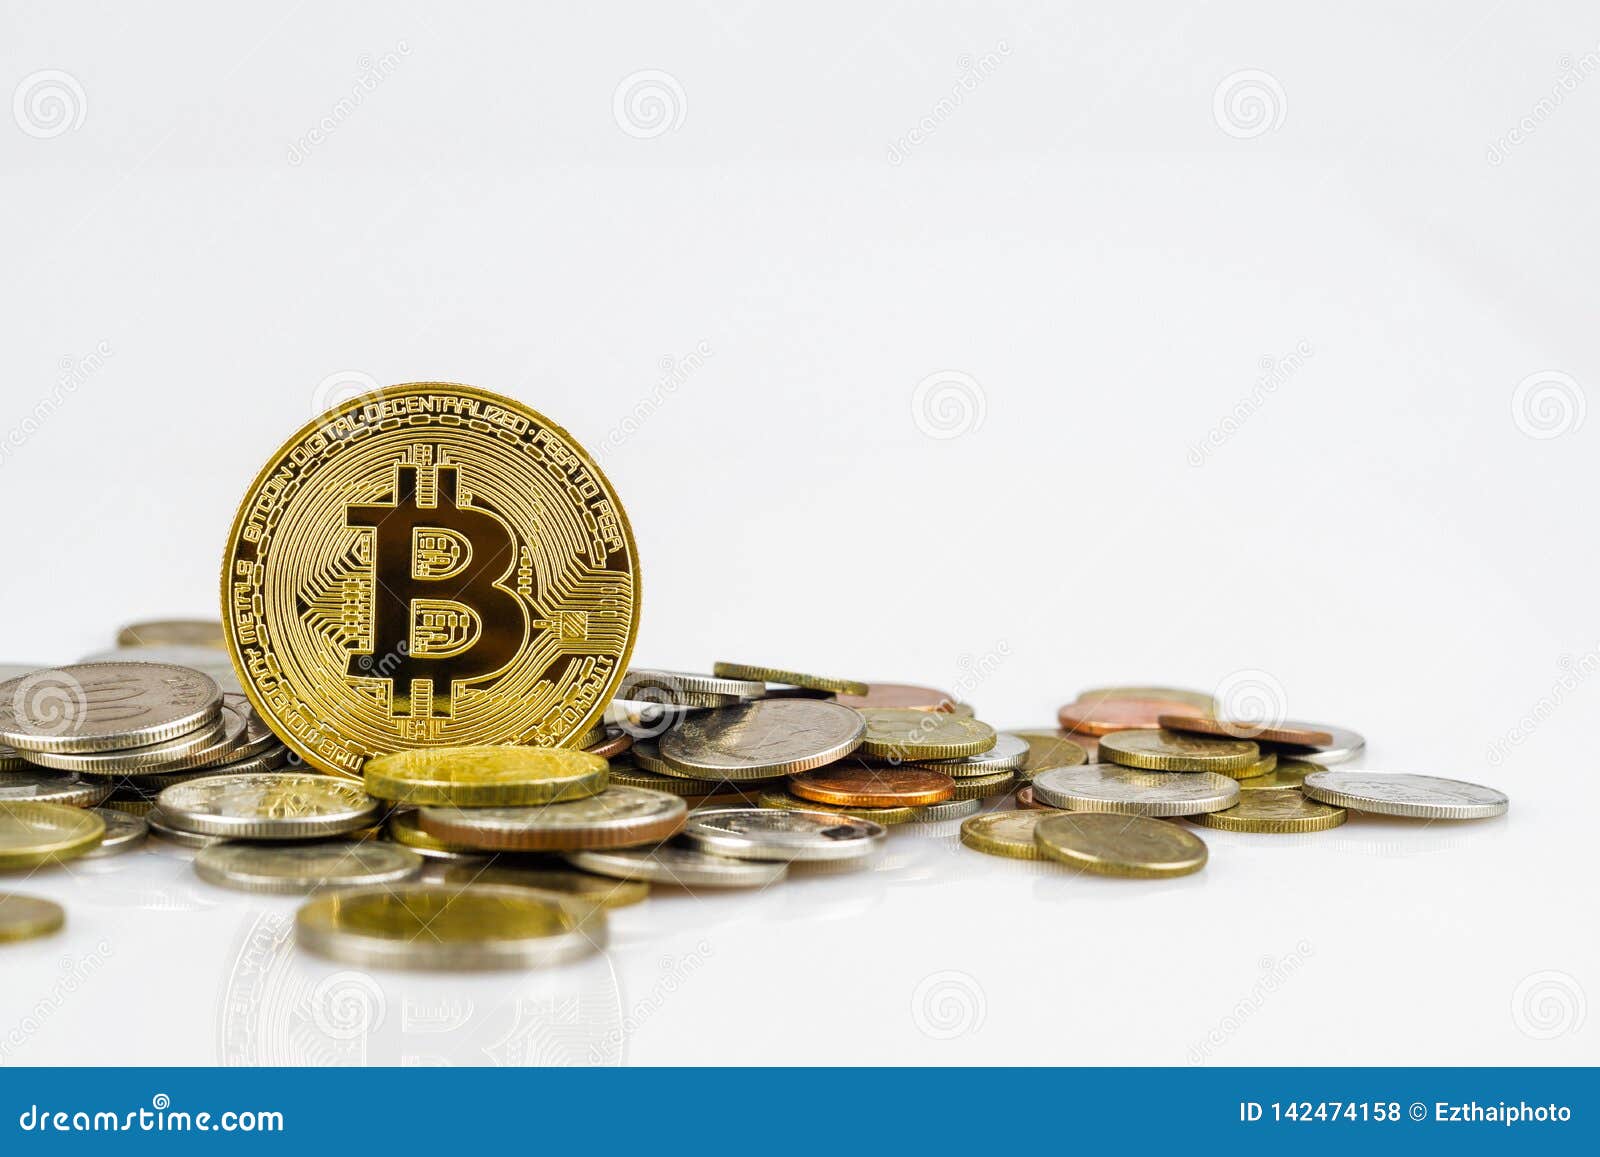 depositar dinheiro em bitcoin h61 pro btc acquista